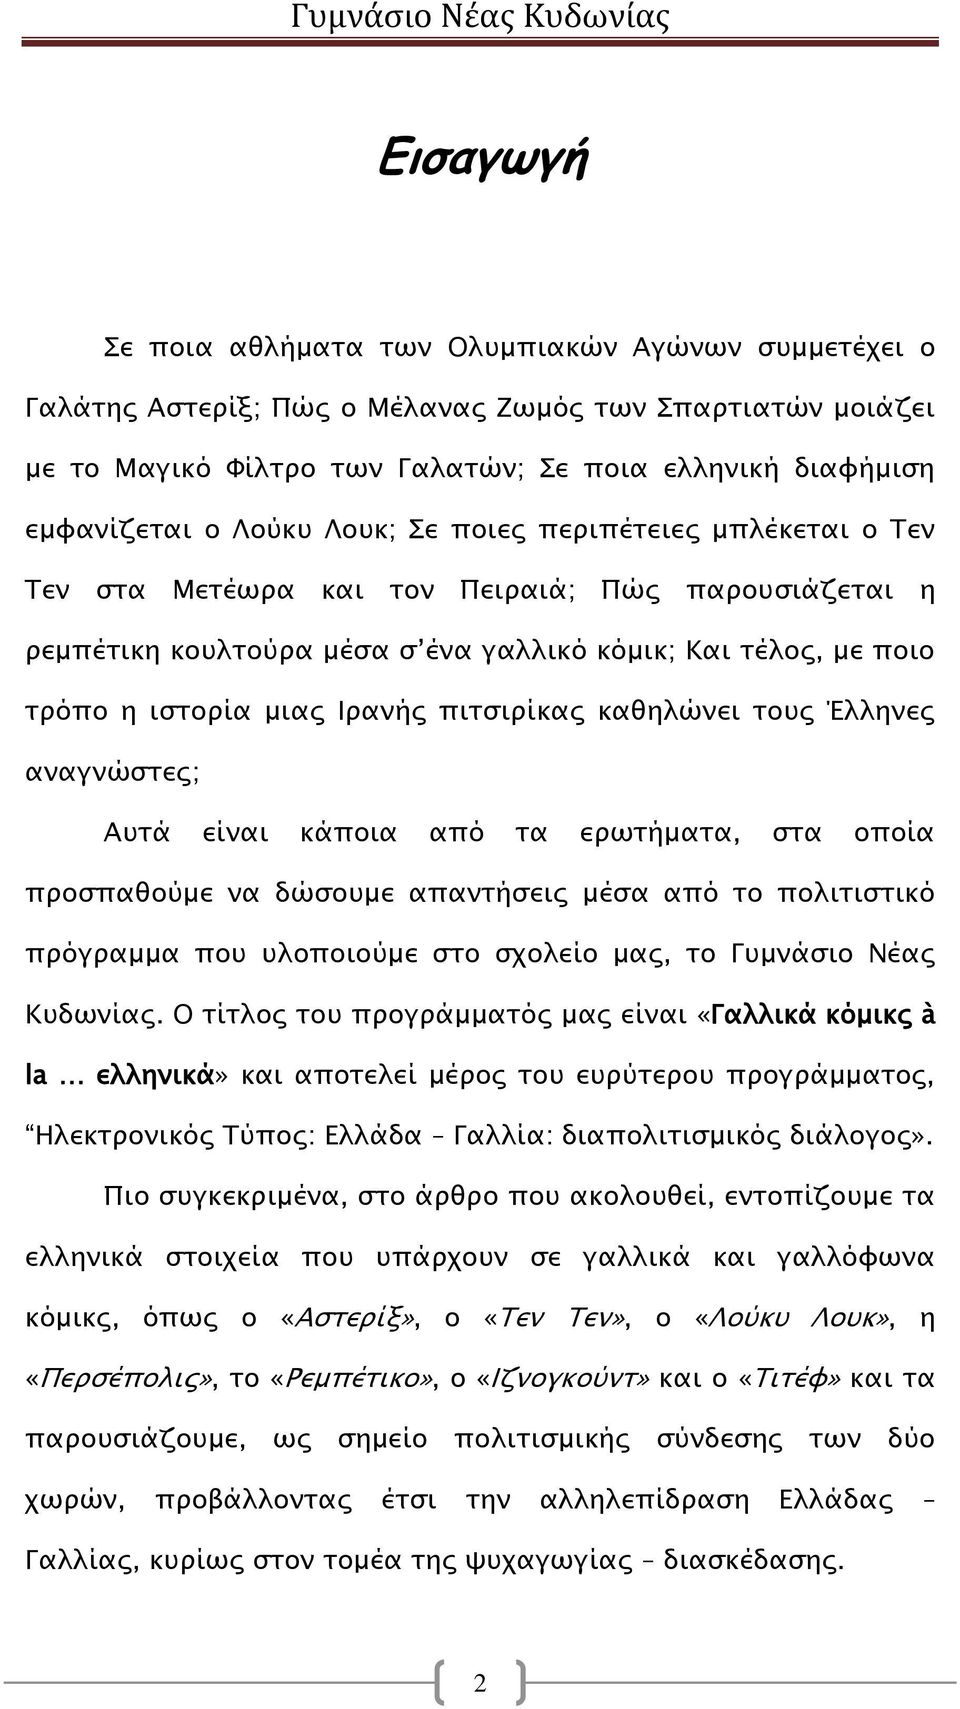 πιτσιρίκας καθηλώνει τους Έλληνες αναγνώστες; Αυτά είναι κάποια από τα ερωτήματα, στα οποία προσπαθούμε να δώσουμε απαντήσεις μέσα από το πολιτιστικό πρόγραμμα που υλοποιούμε στο σχολείο μας, το